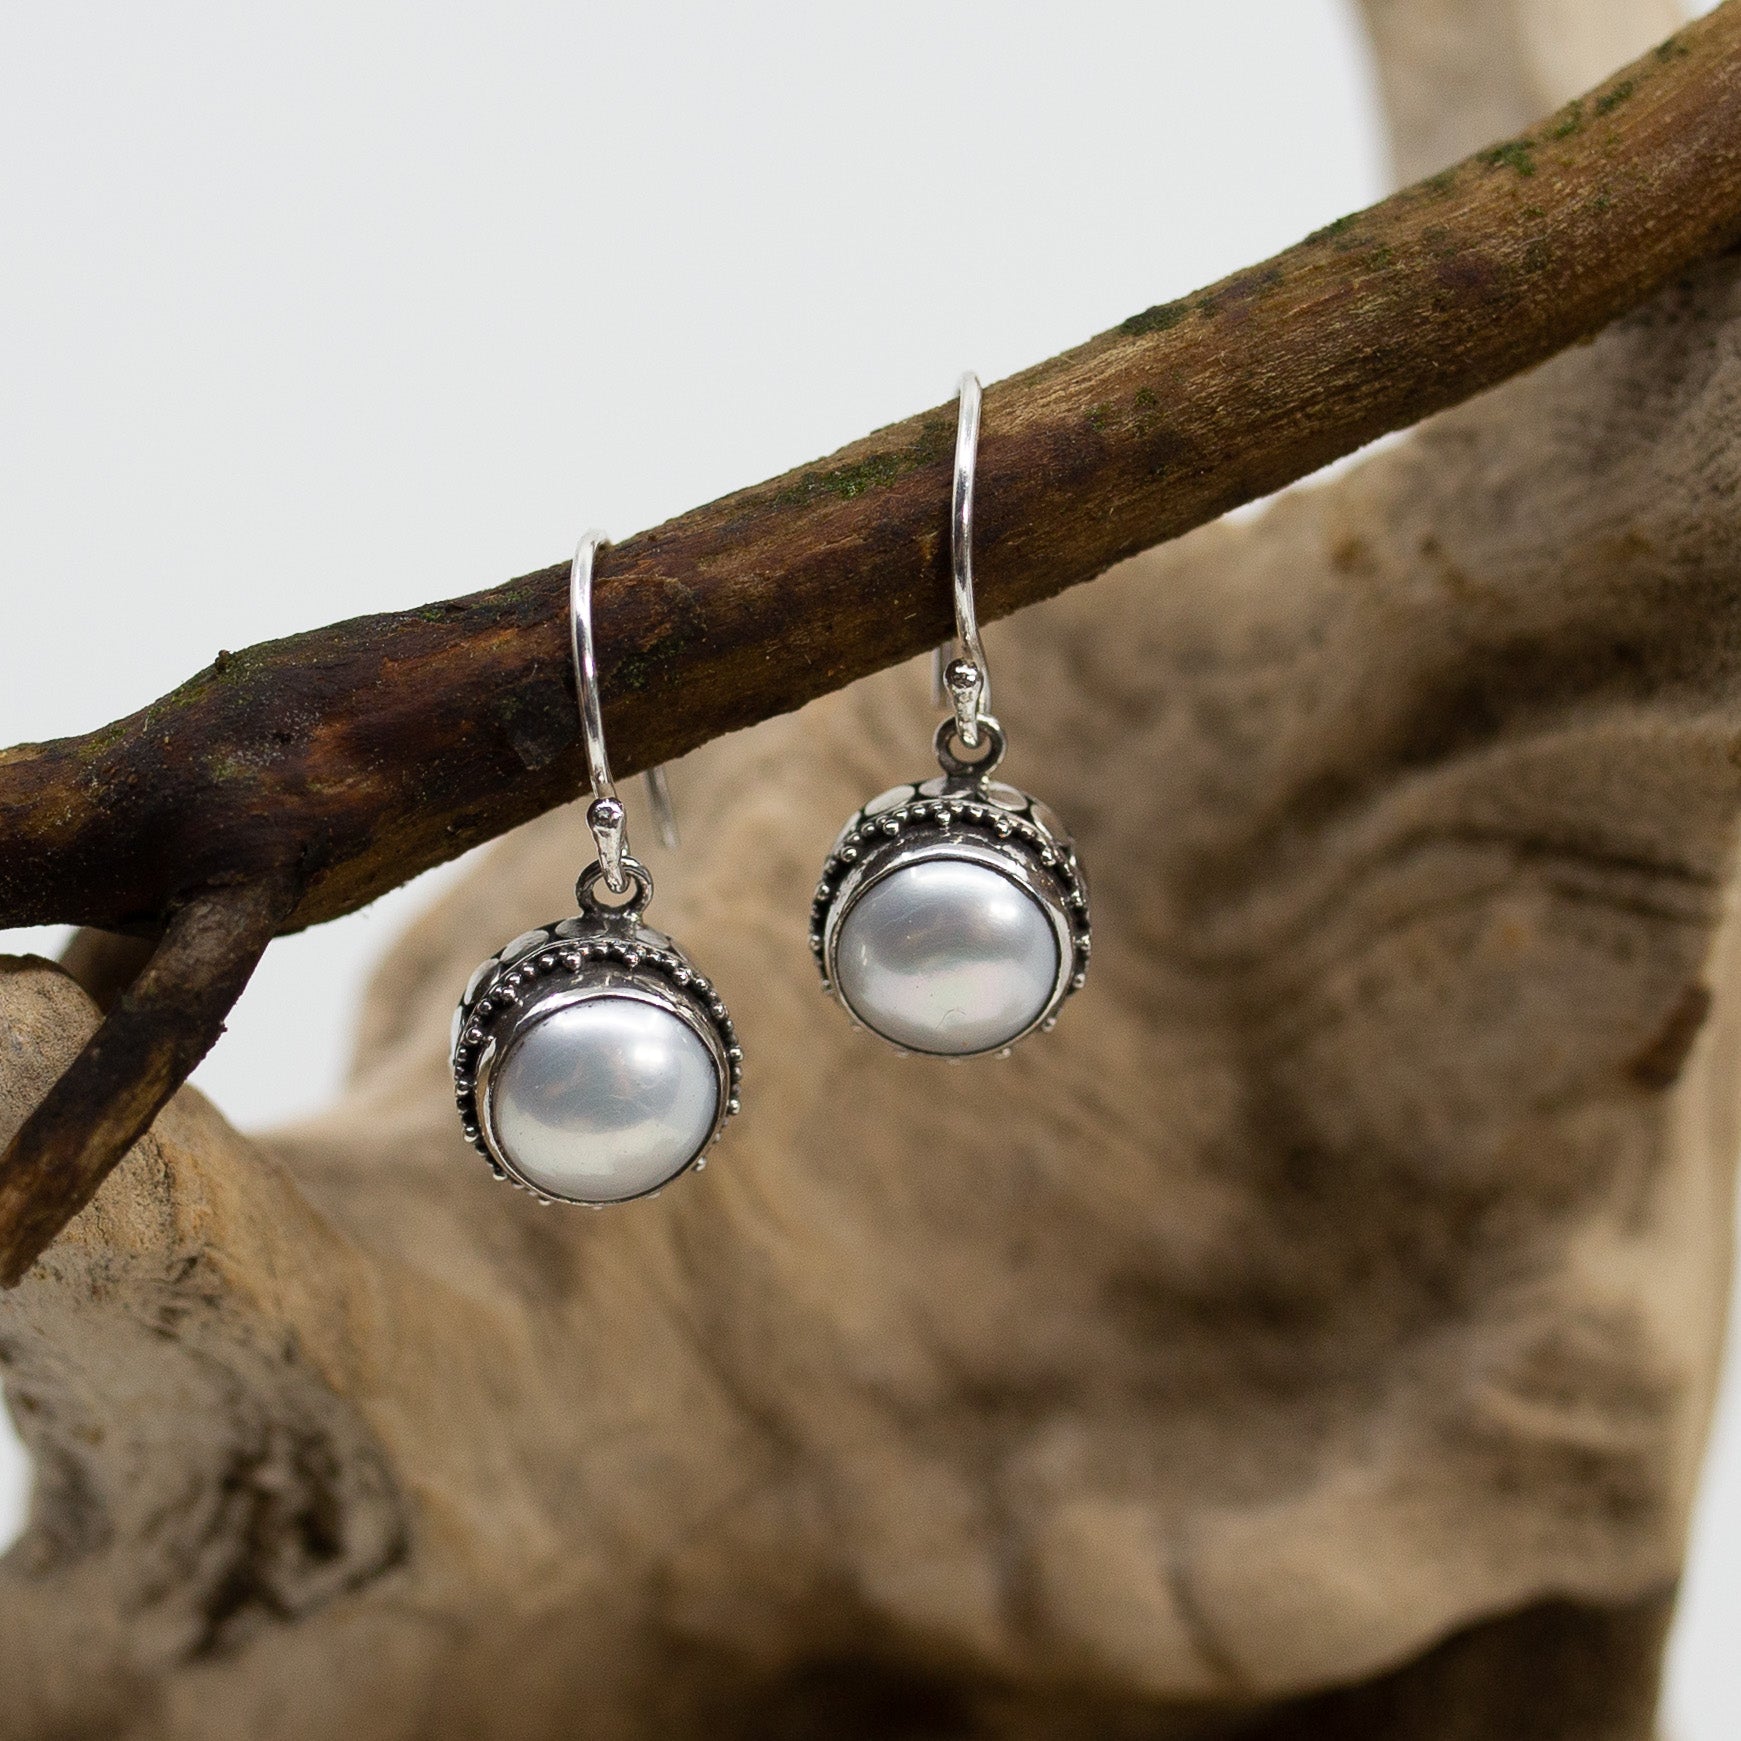 Bali Dot & Swirl Pearl Dangle Earrings on wood